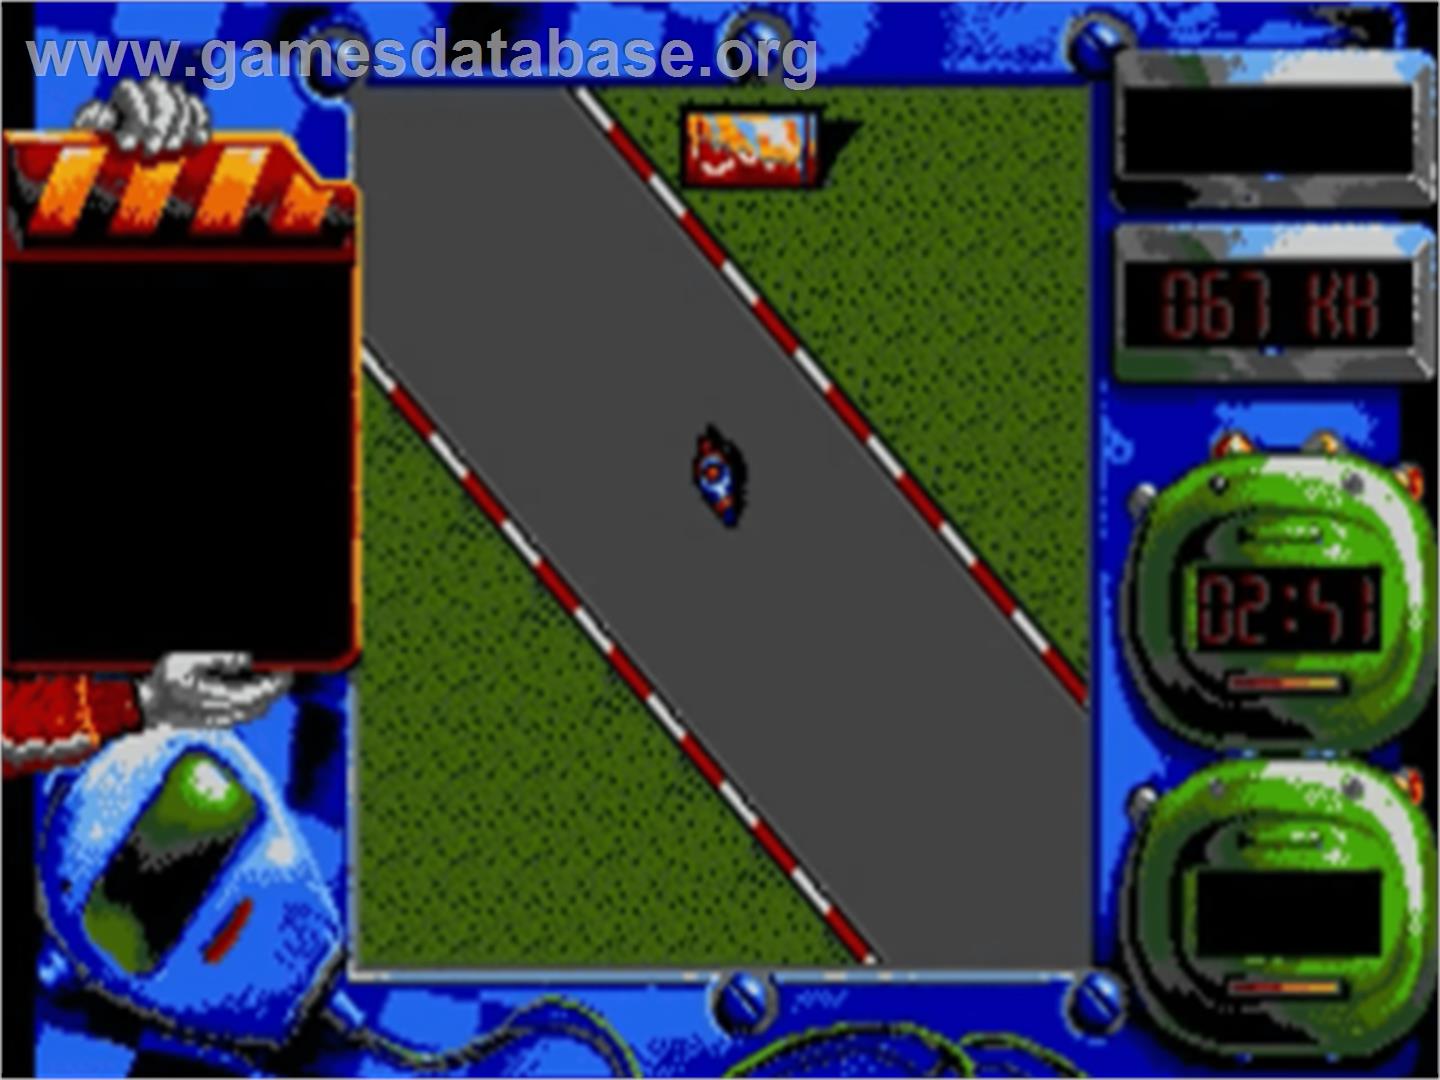 Grand Prix Master - Commodore Amiga - Artwork - In Game